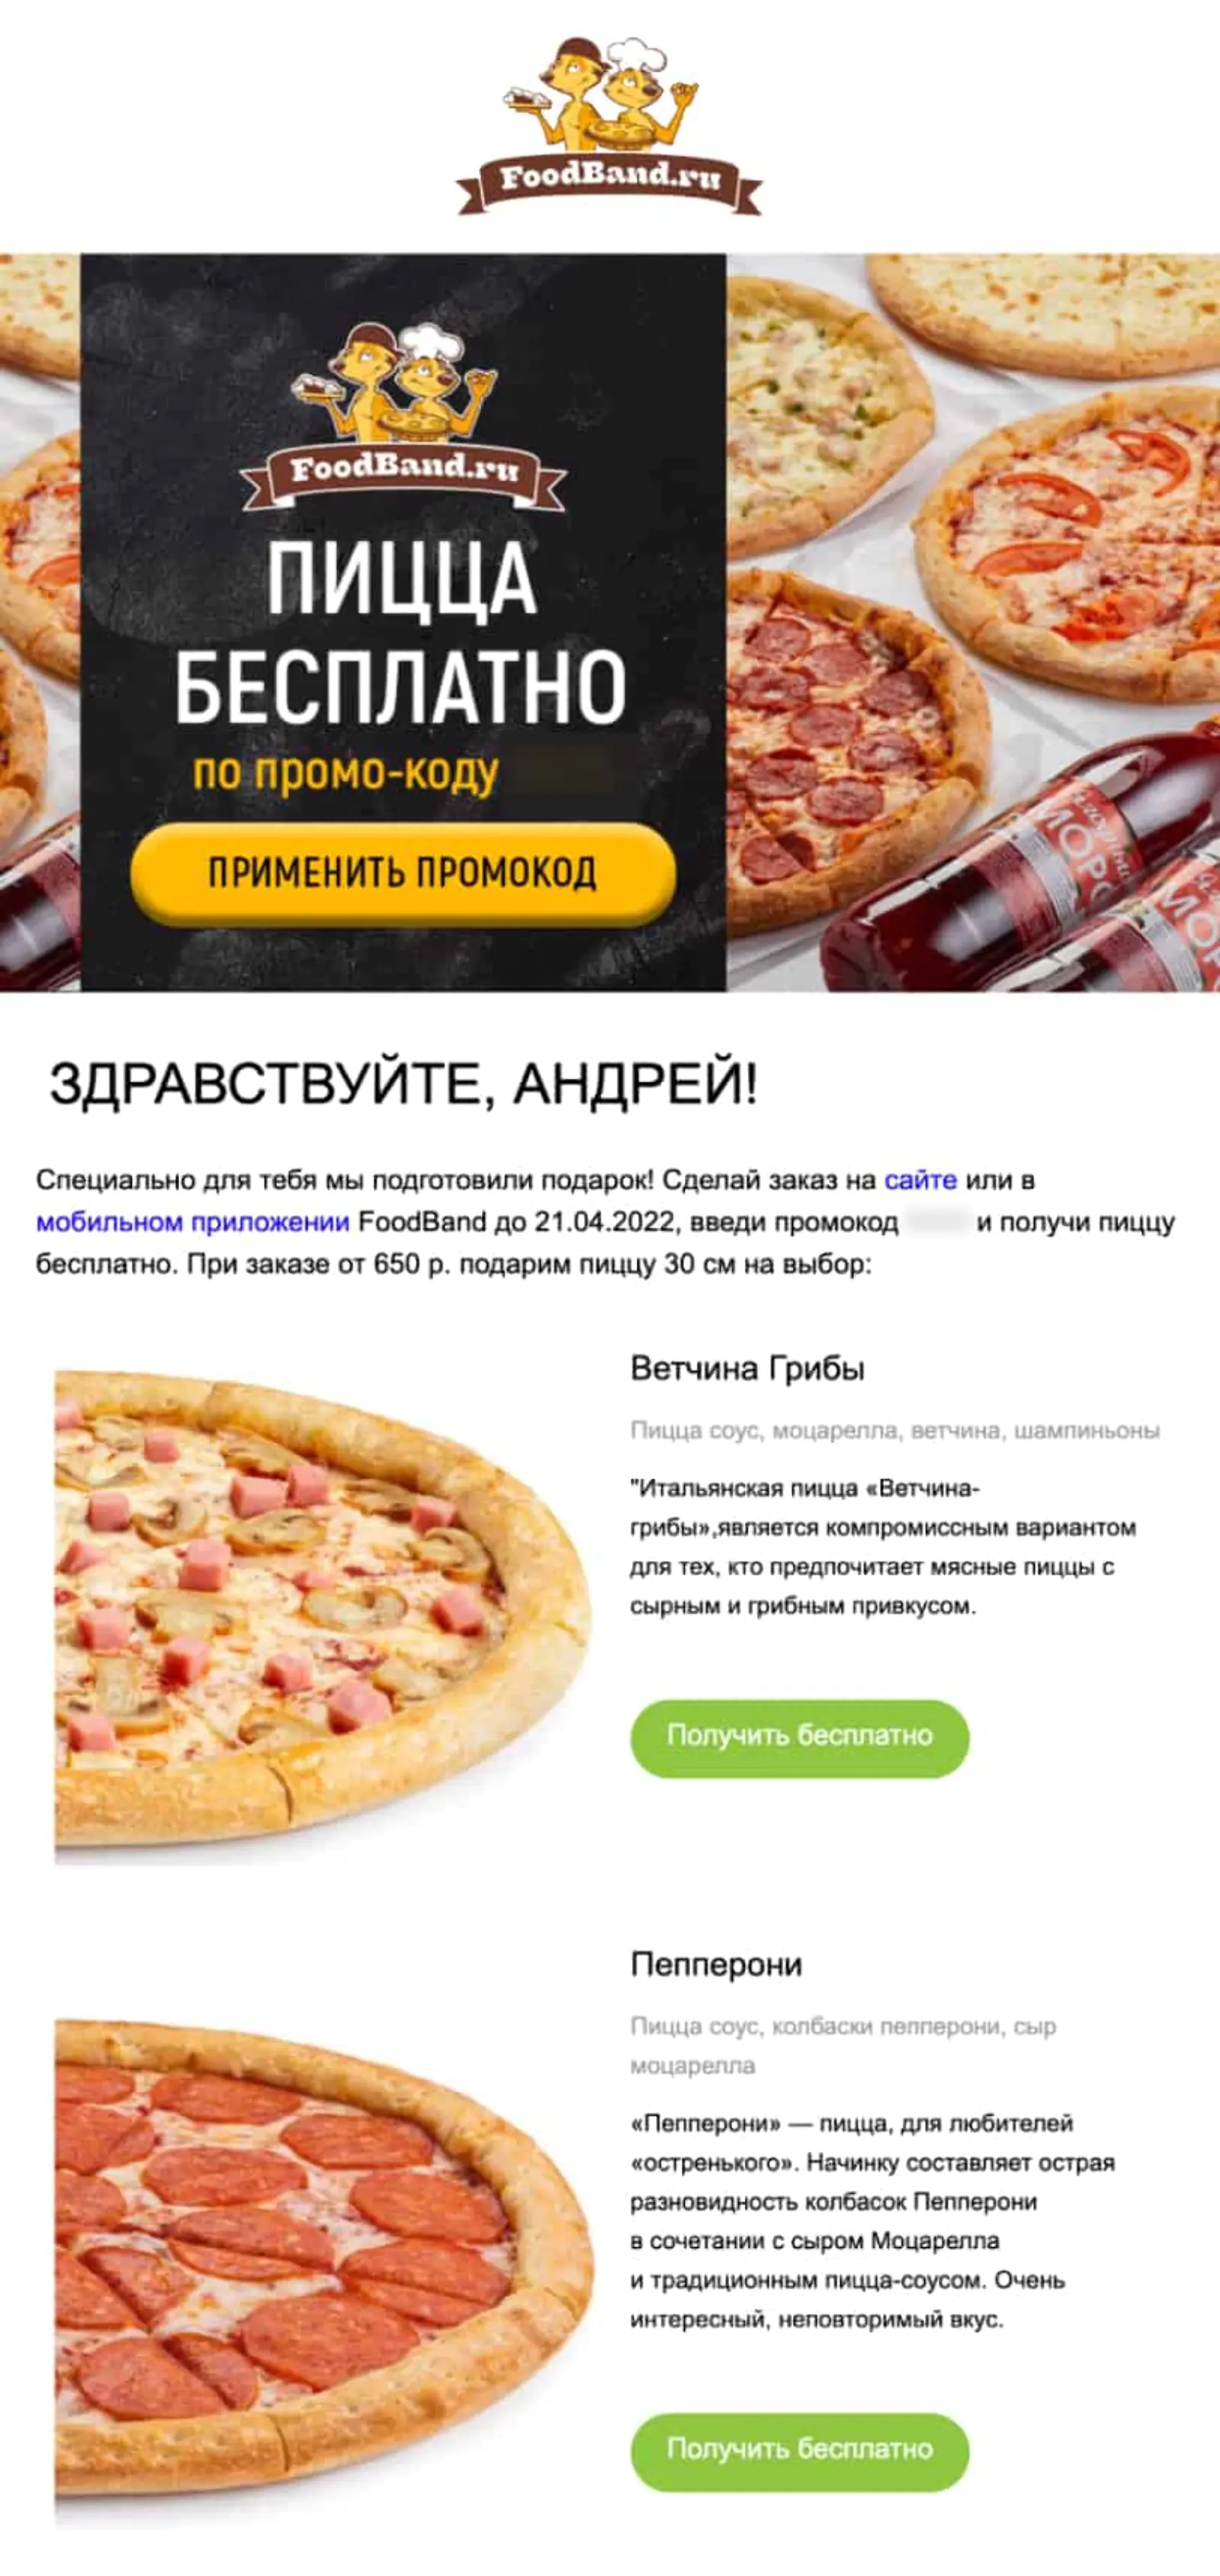 FoodBand предлагает клиентам пиццу в подарок при заказе на минимальную сумму 650 рублей